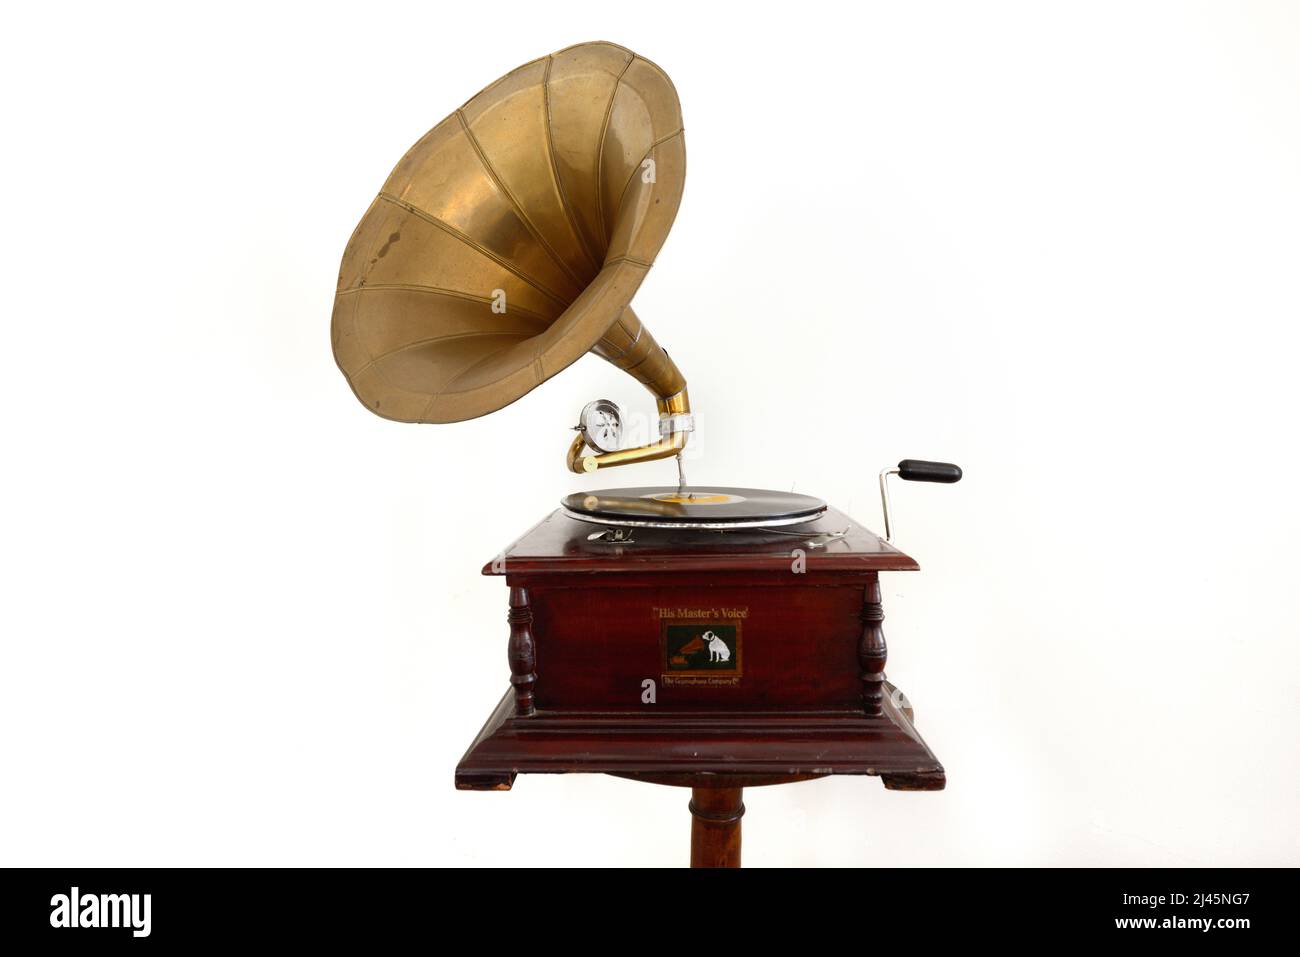 Old, Vintage, Antique or Early c20th Gramophone prodotto dalla Gramophone Company Limited, nota anche come His Master's Voice (HMV) su sfondo bianco Foto Stock